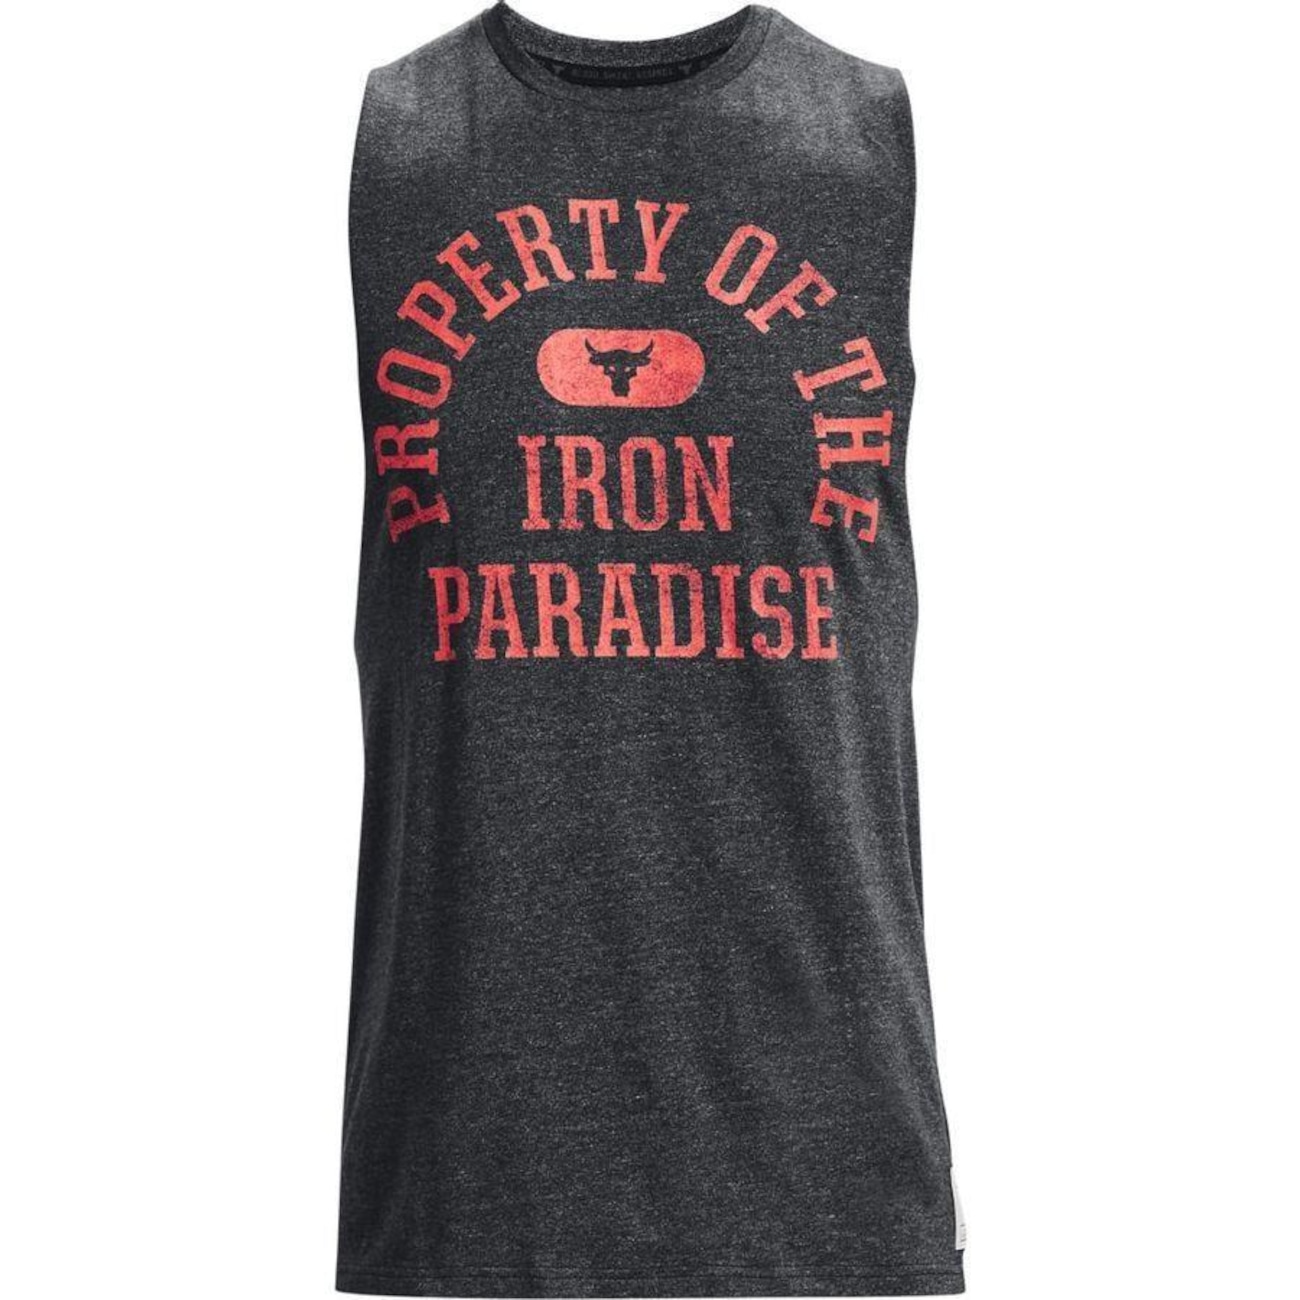 Regata Project Rock Iron Paradise - Under Armour em Promoção na Americanas